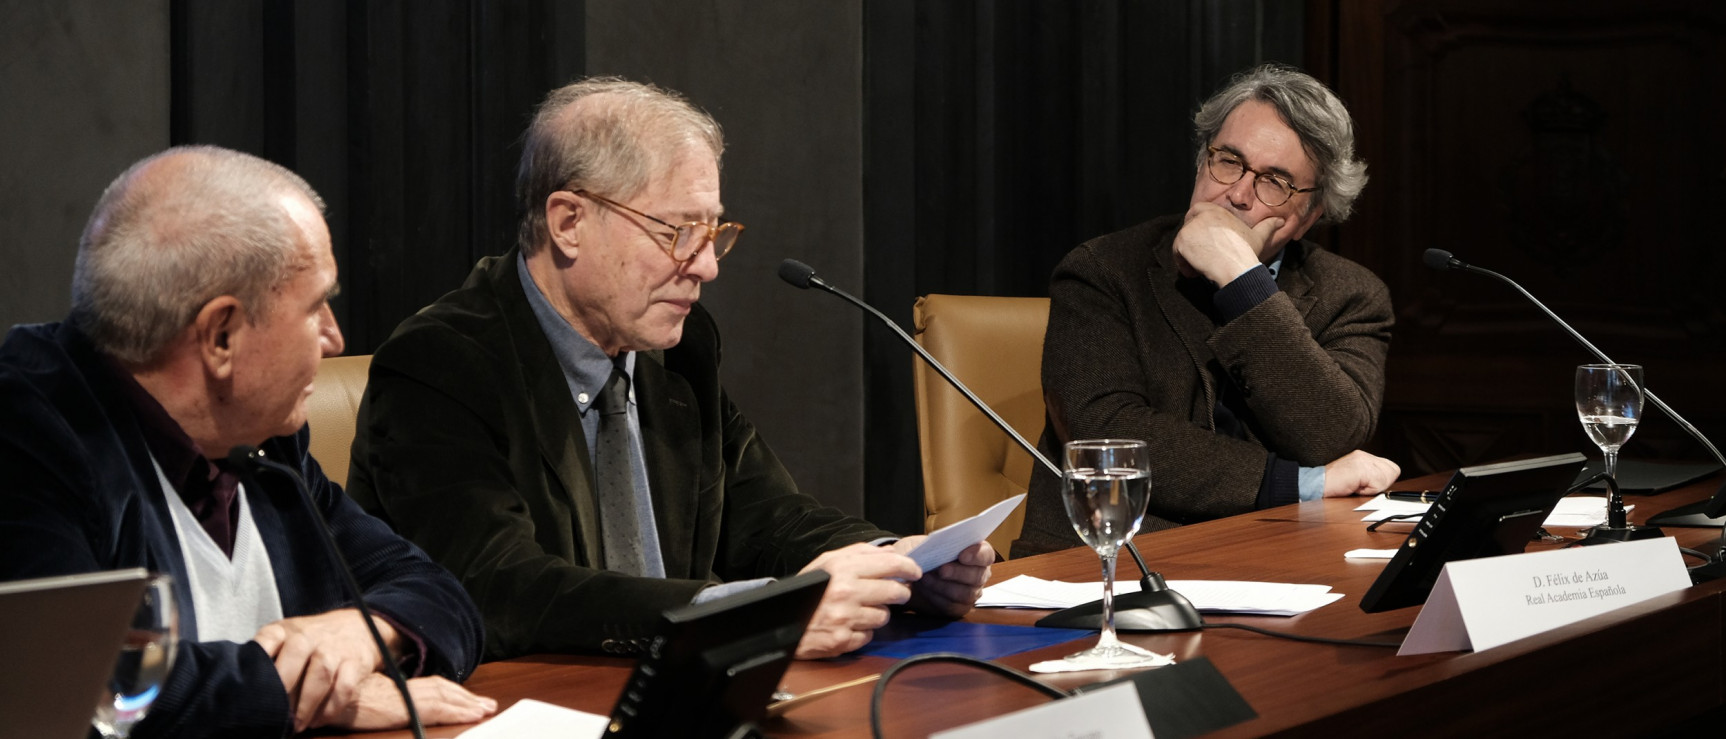 Félix de Azúa modera la mesa «Heterodoxias andaluzas» en el XVI Congreso de la ASALE